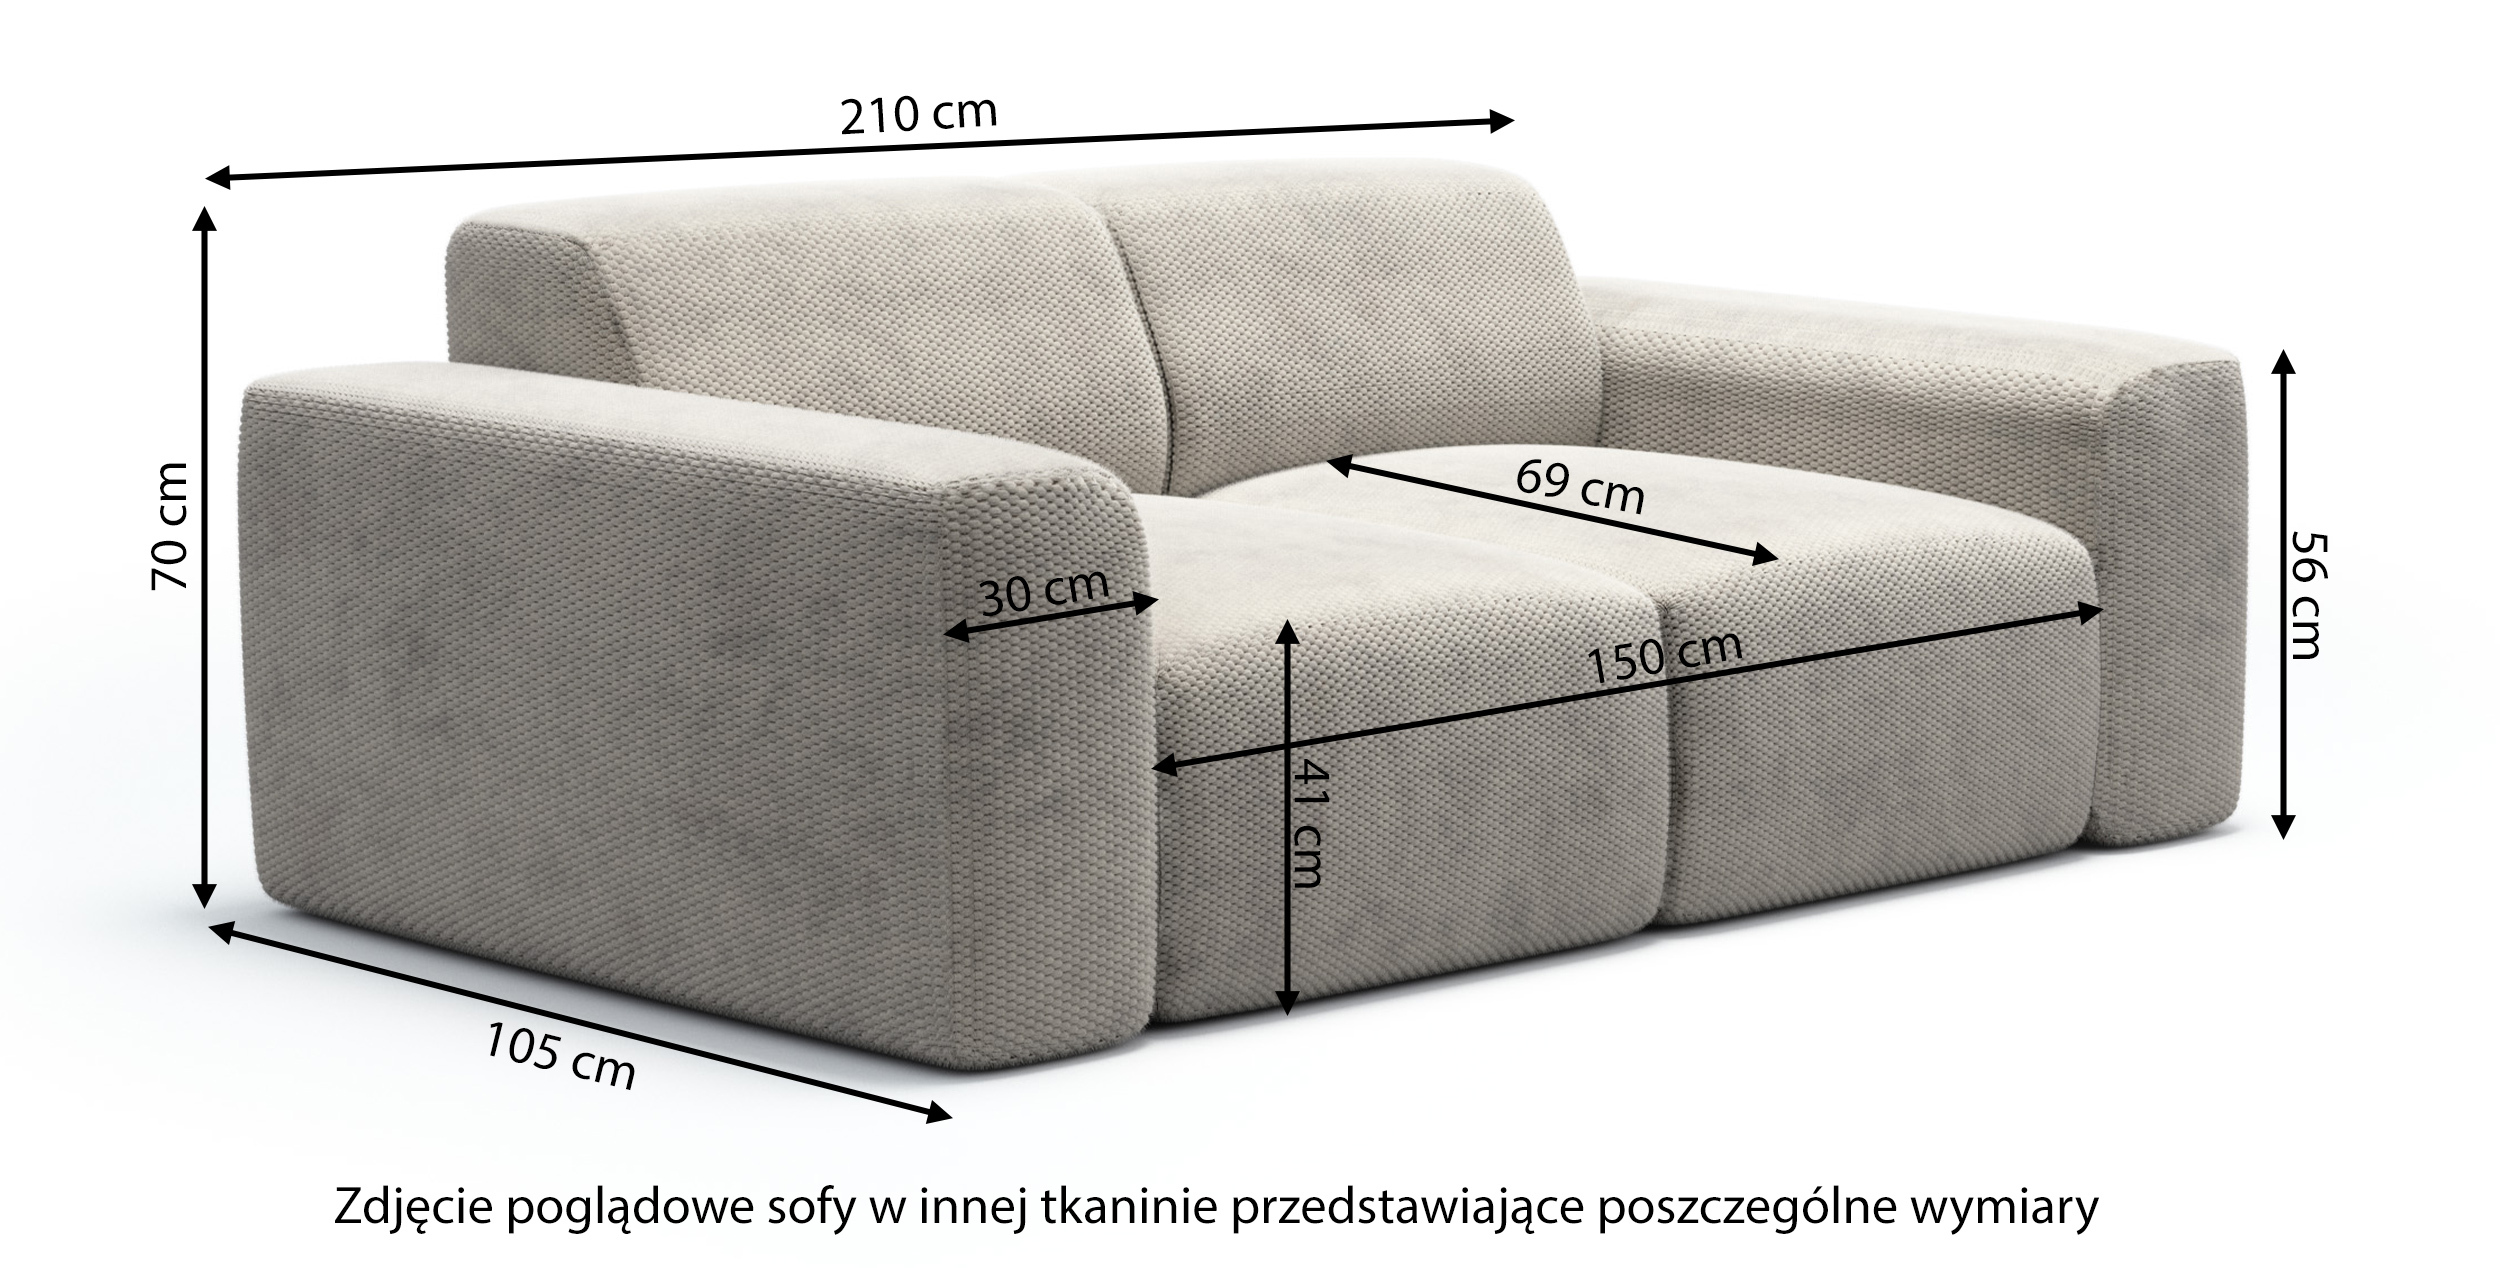 Sofa dwuosobowa Terrafino granatowa w tkaninie hydrofobowej